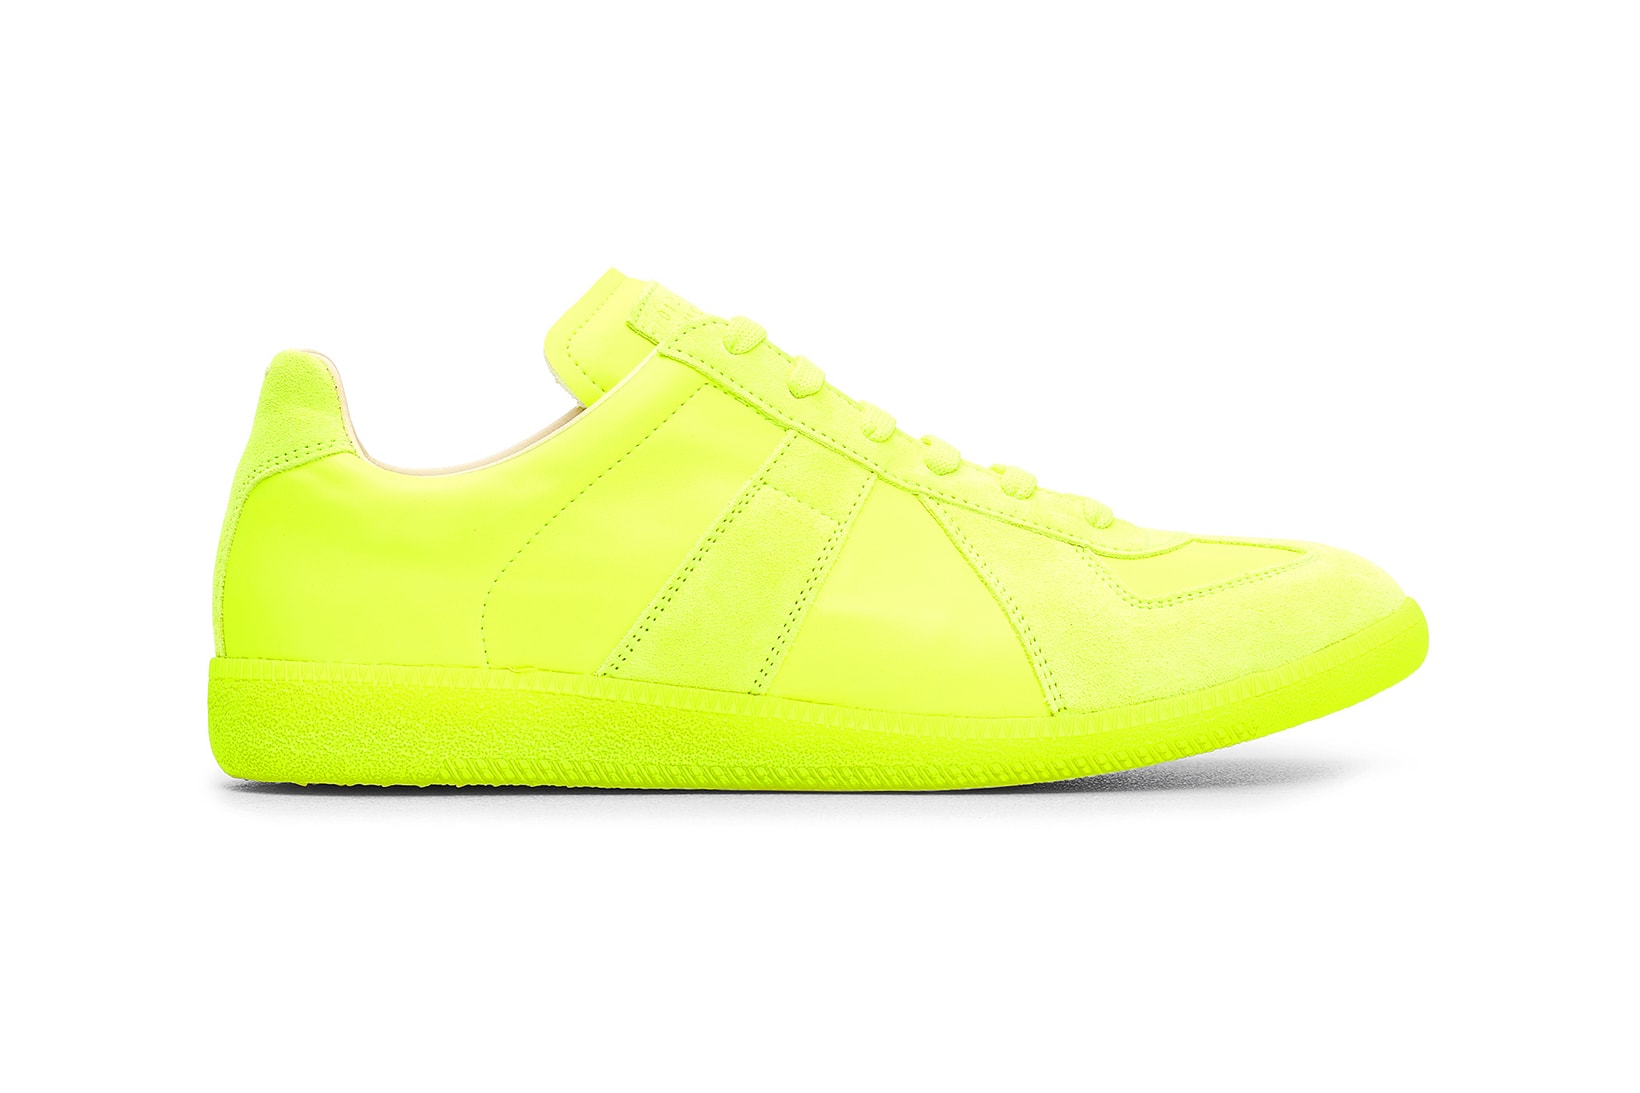 Maison Margiela Replica Sneaker Neon Yellow Colorway Release Information Details Buy Cop Tres Bien Sweden Online Web Store Retailer